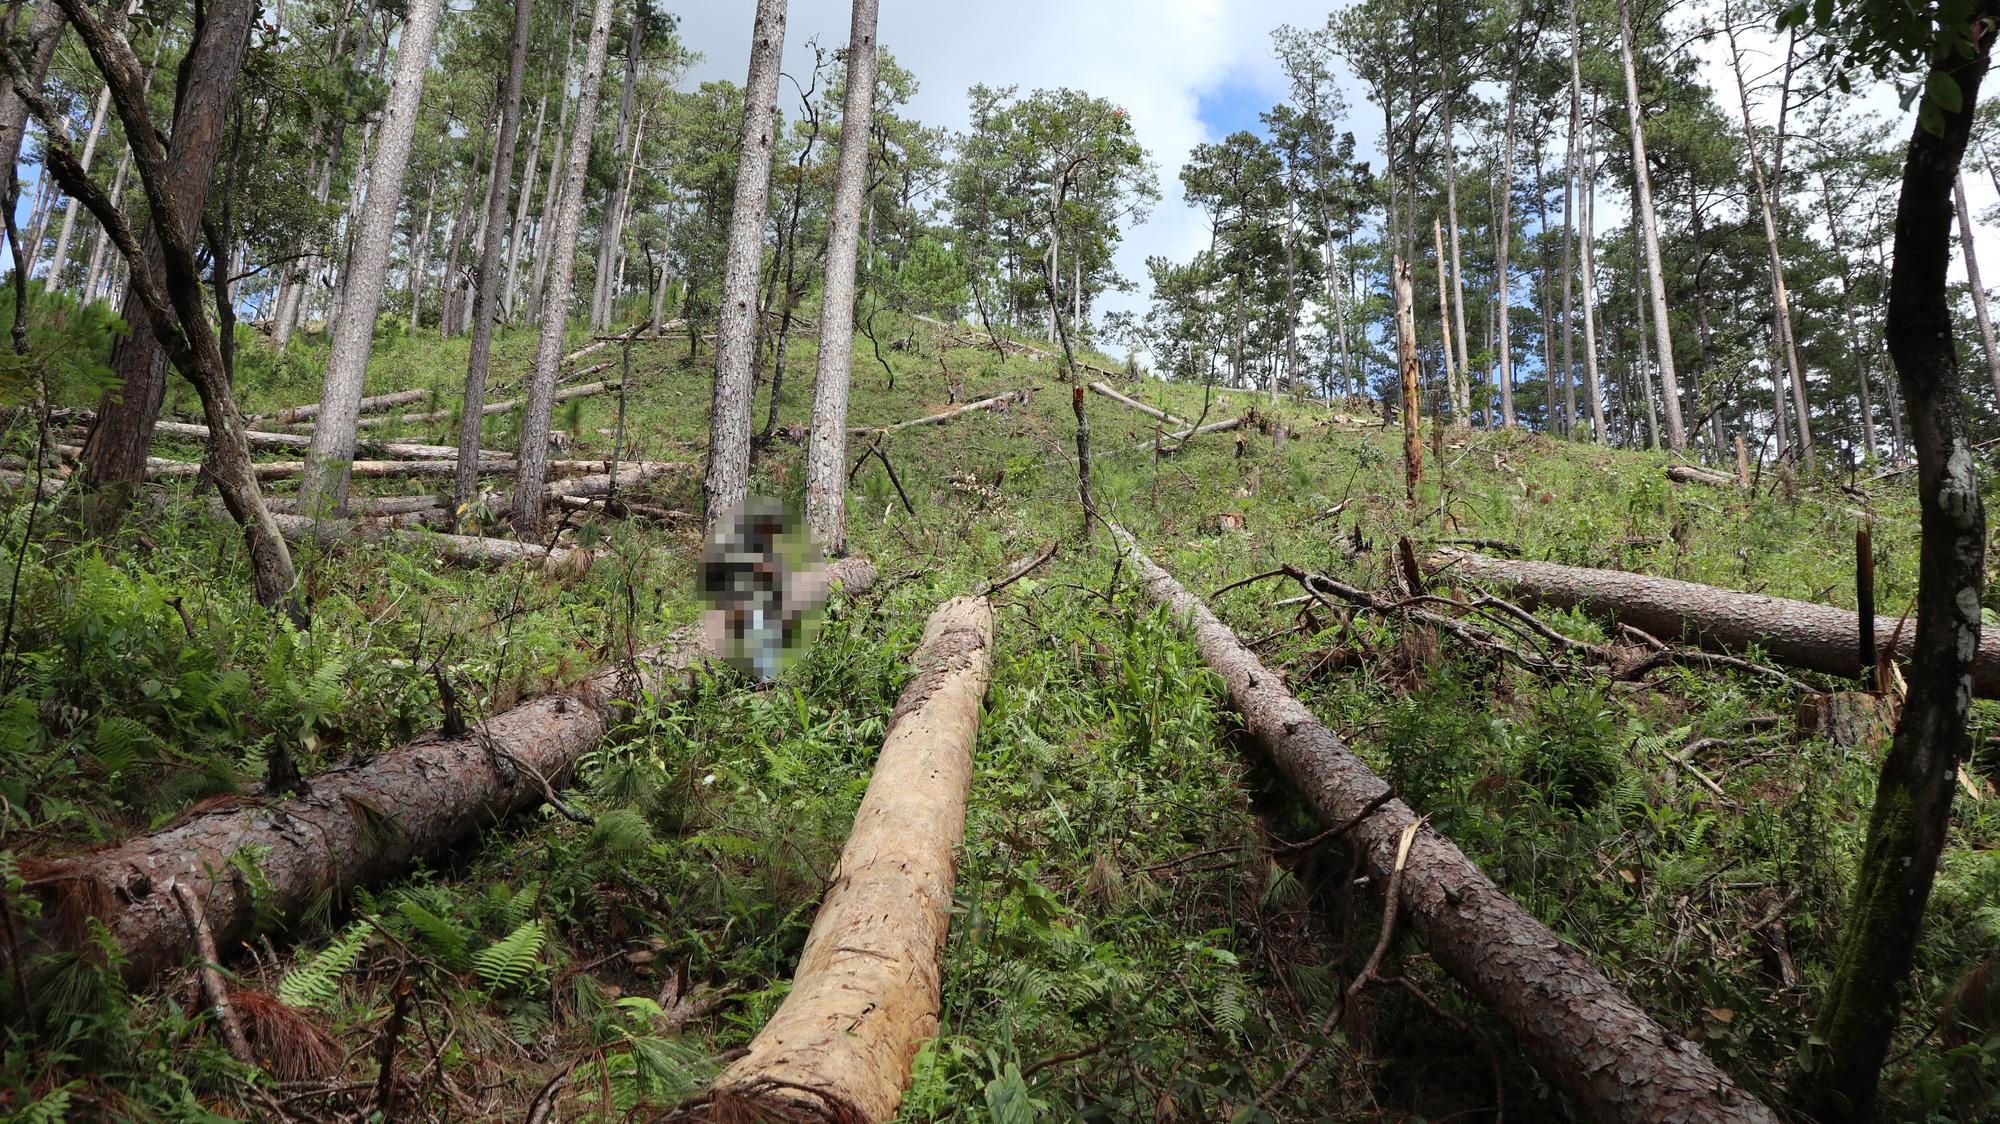  Lâm Đồng: Tạm đình chỉ công tác 4 Trưởng ban quản lý rừng do thiếu trách nhiệm - Ảnh 2.